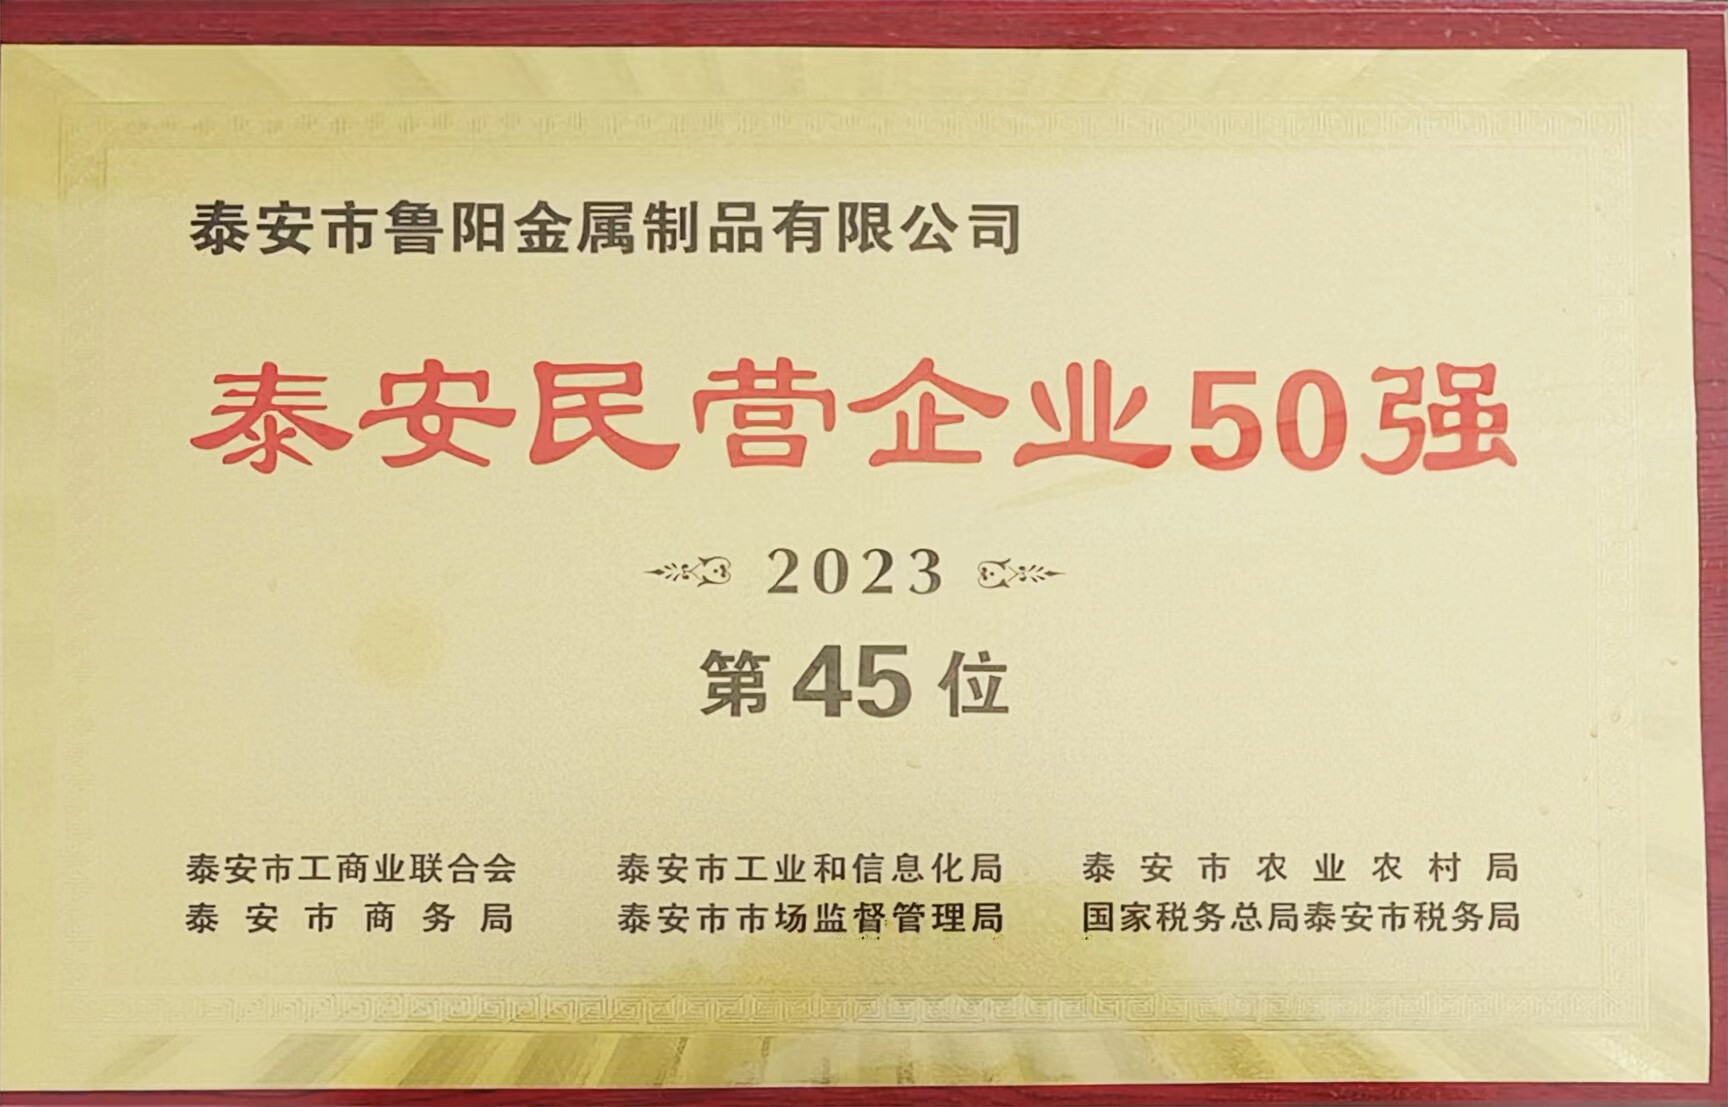 鲁阳金属被评为“泰安民营企业50强”45位